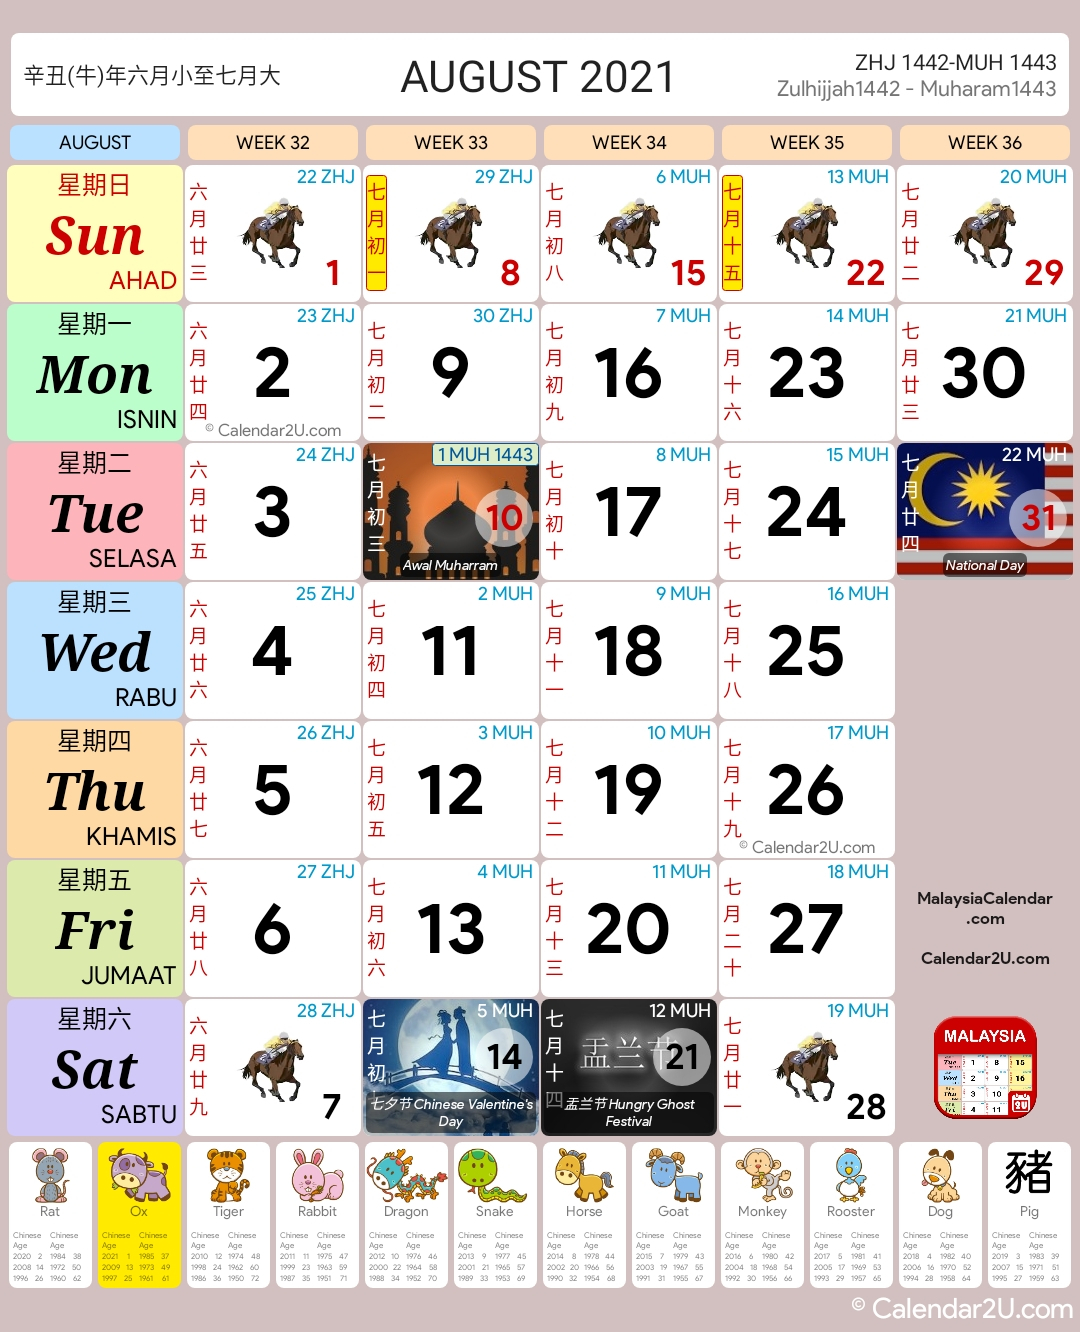 Malaysia Calendar Year 2021 - Malaysia Calendar